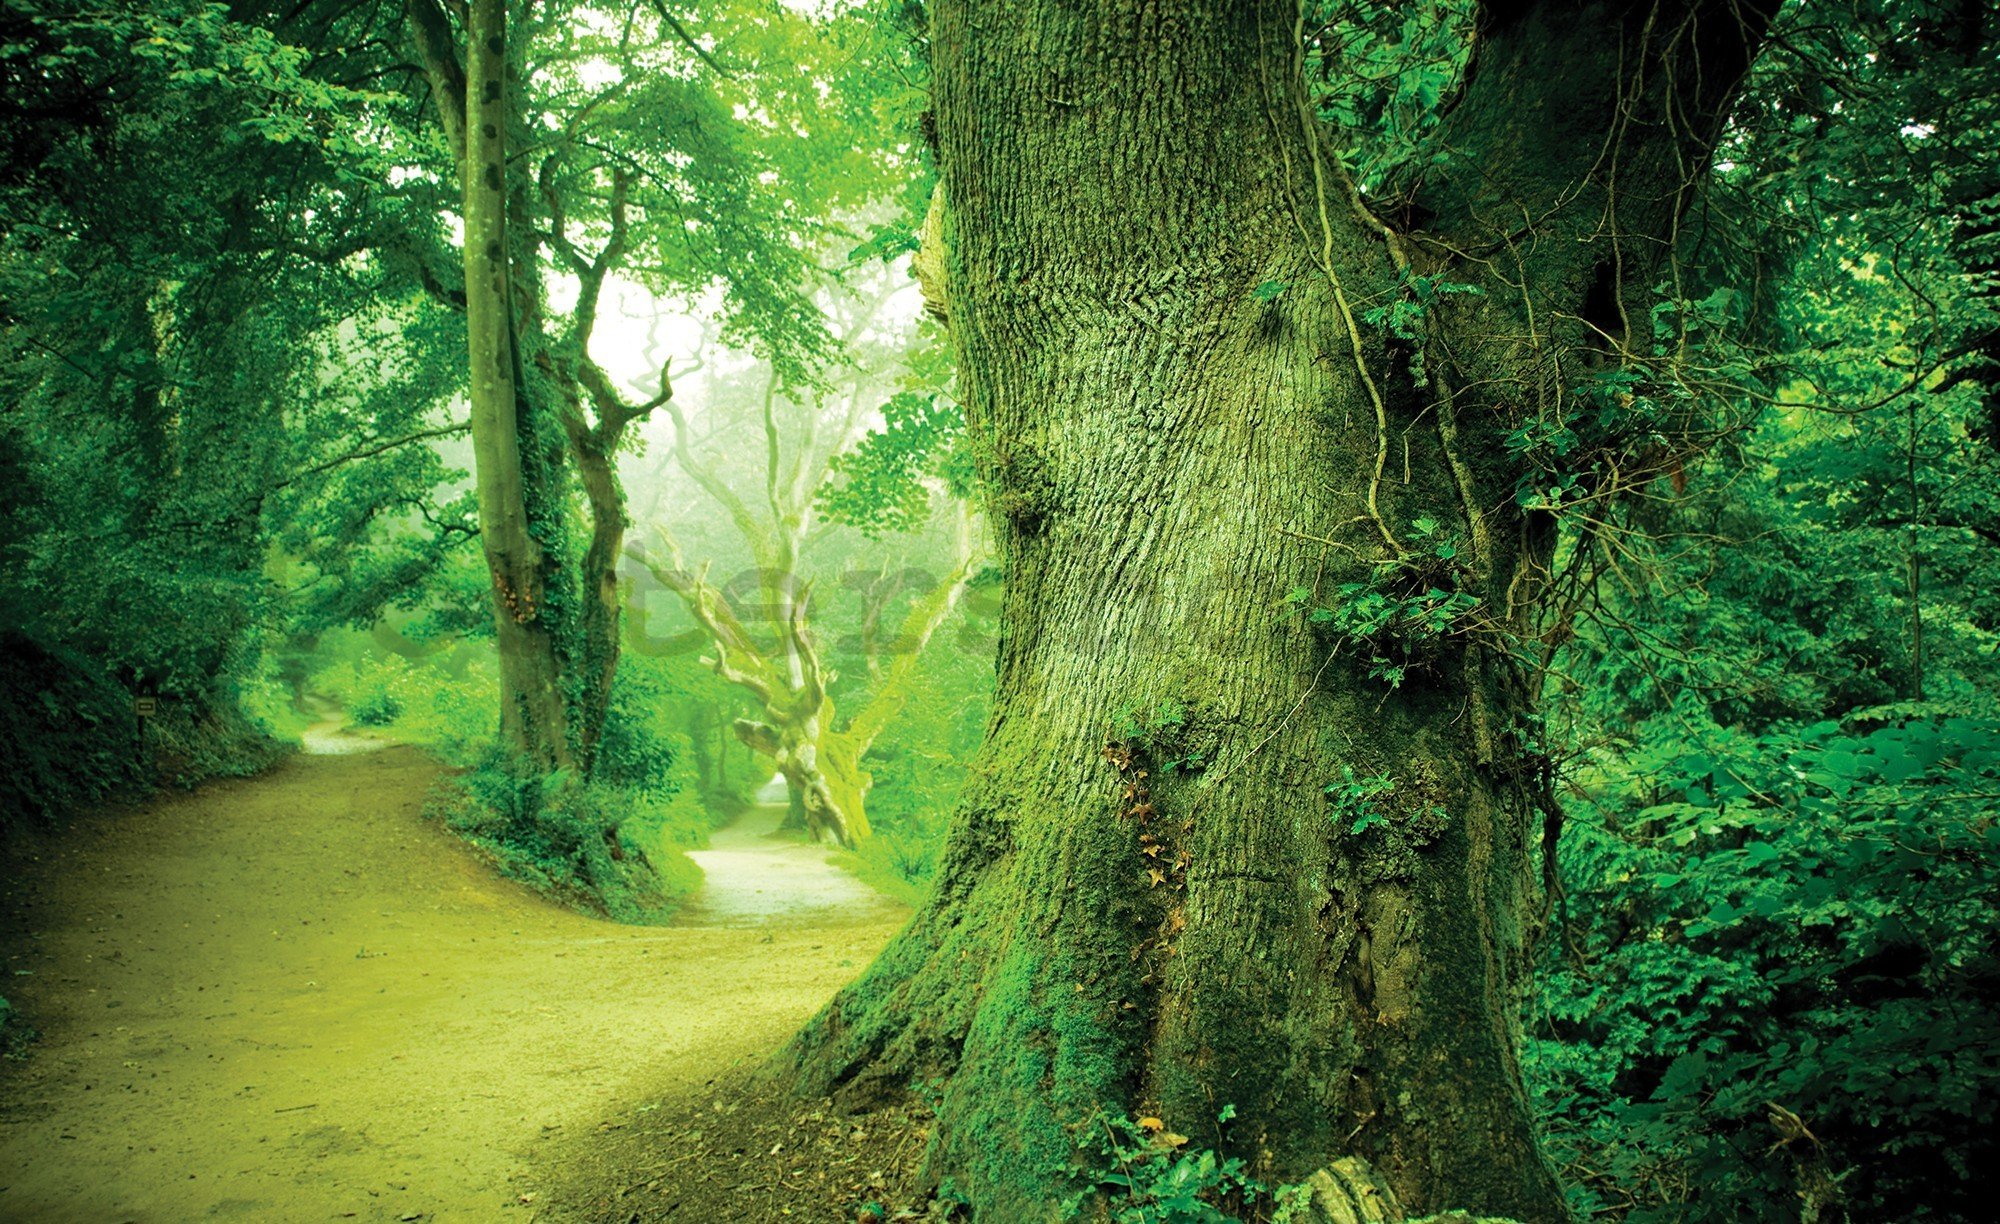 Fototapeta vliesová: Kouzelný les - 416x254 cm